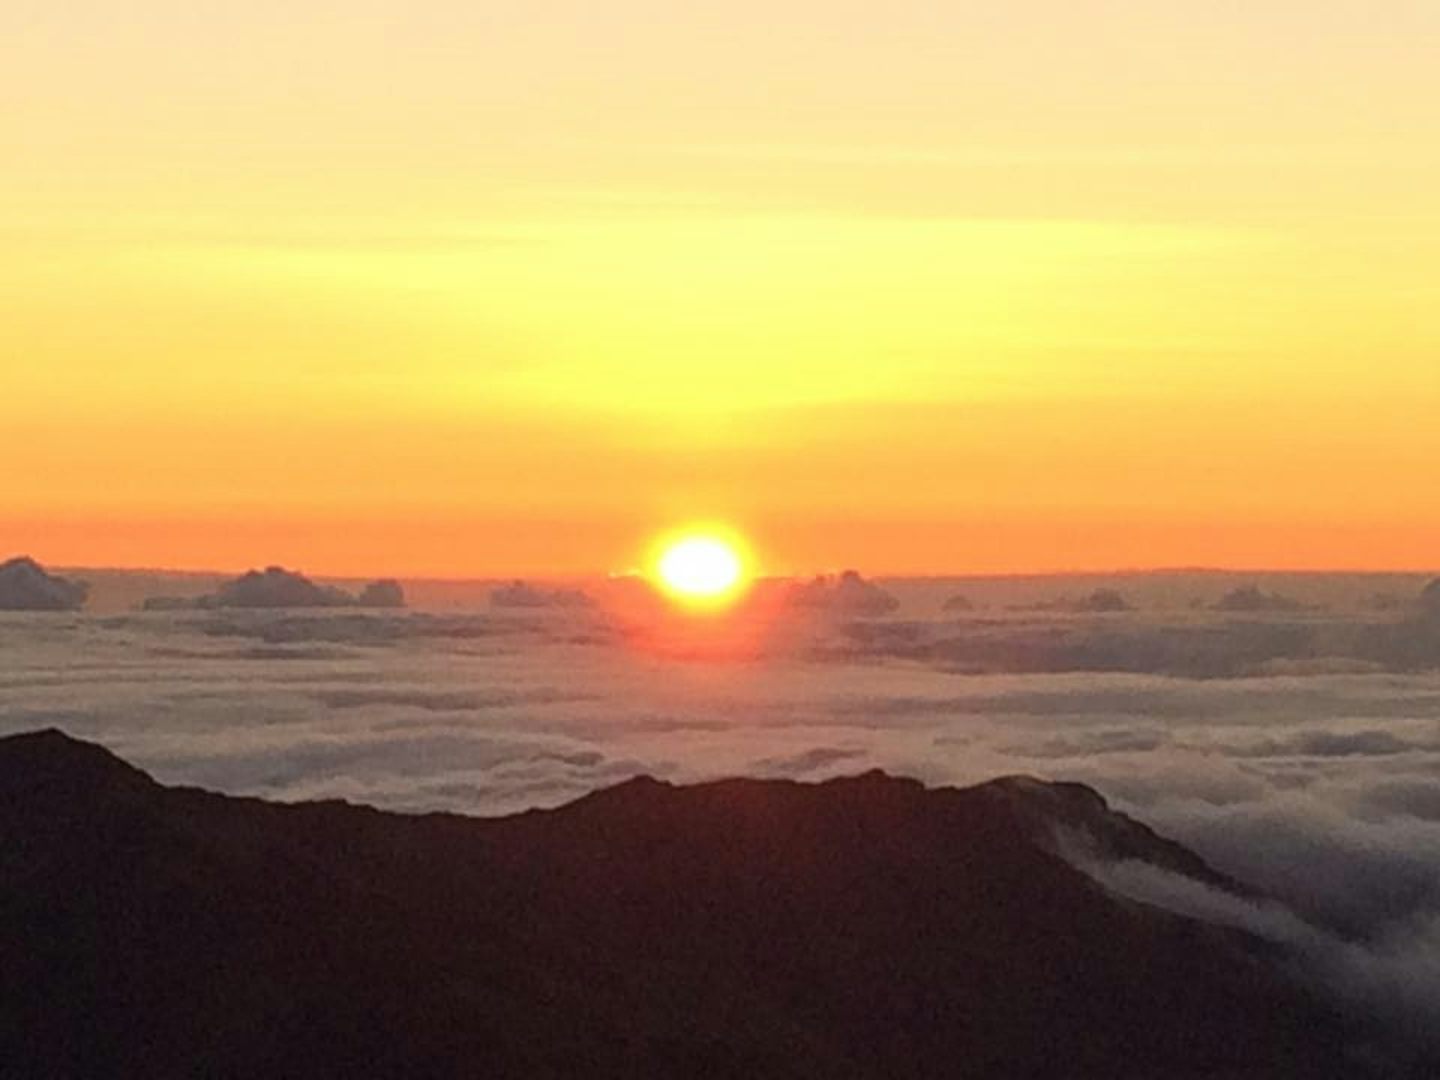 Sunrise at Mt. Haleakala.